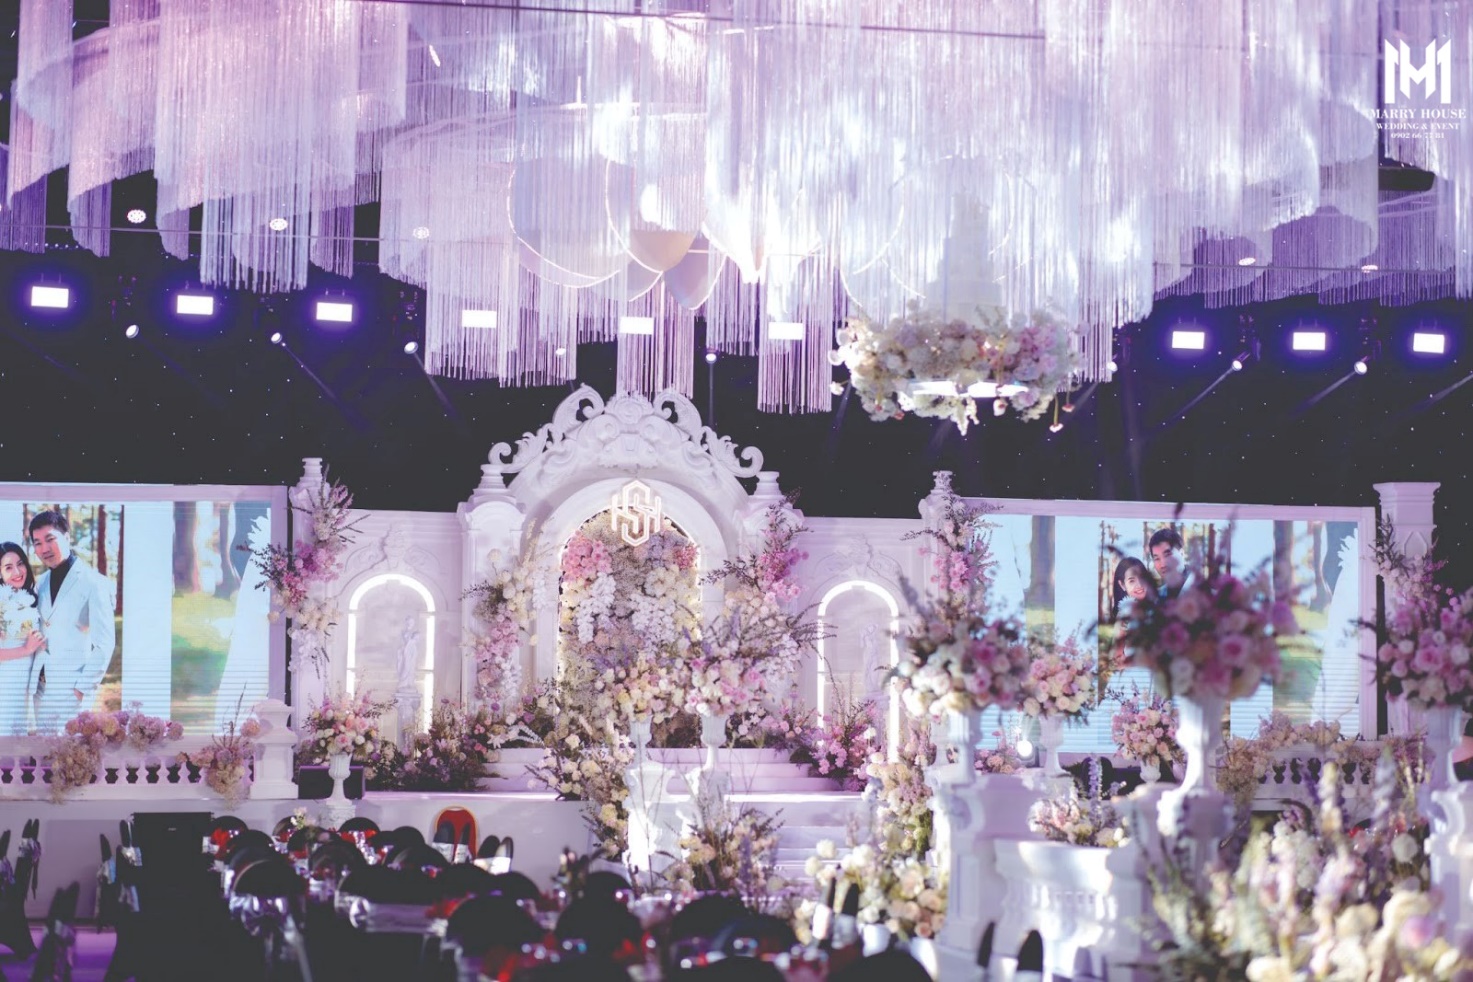 Marry House - Hoàn thiện đám cưới với 6 tấn hoa trong vòng 1 tháng bởi 150 nhân công - Ảnh 1.